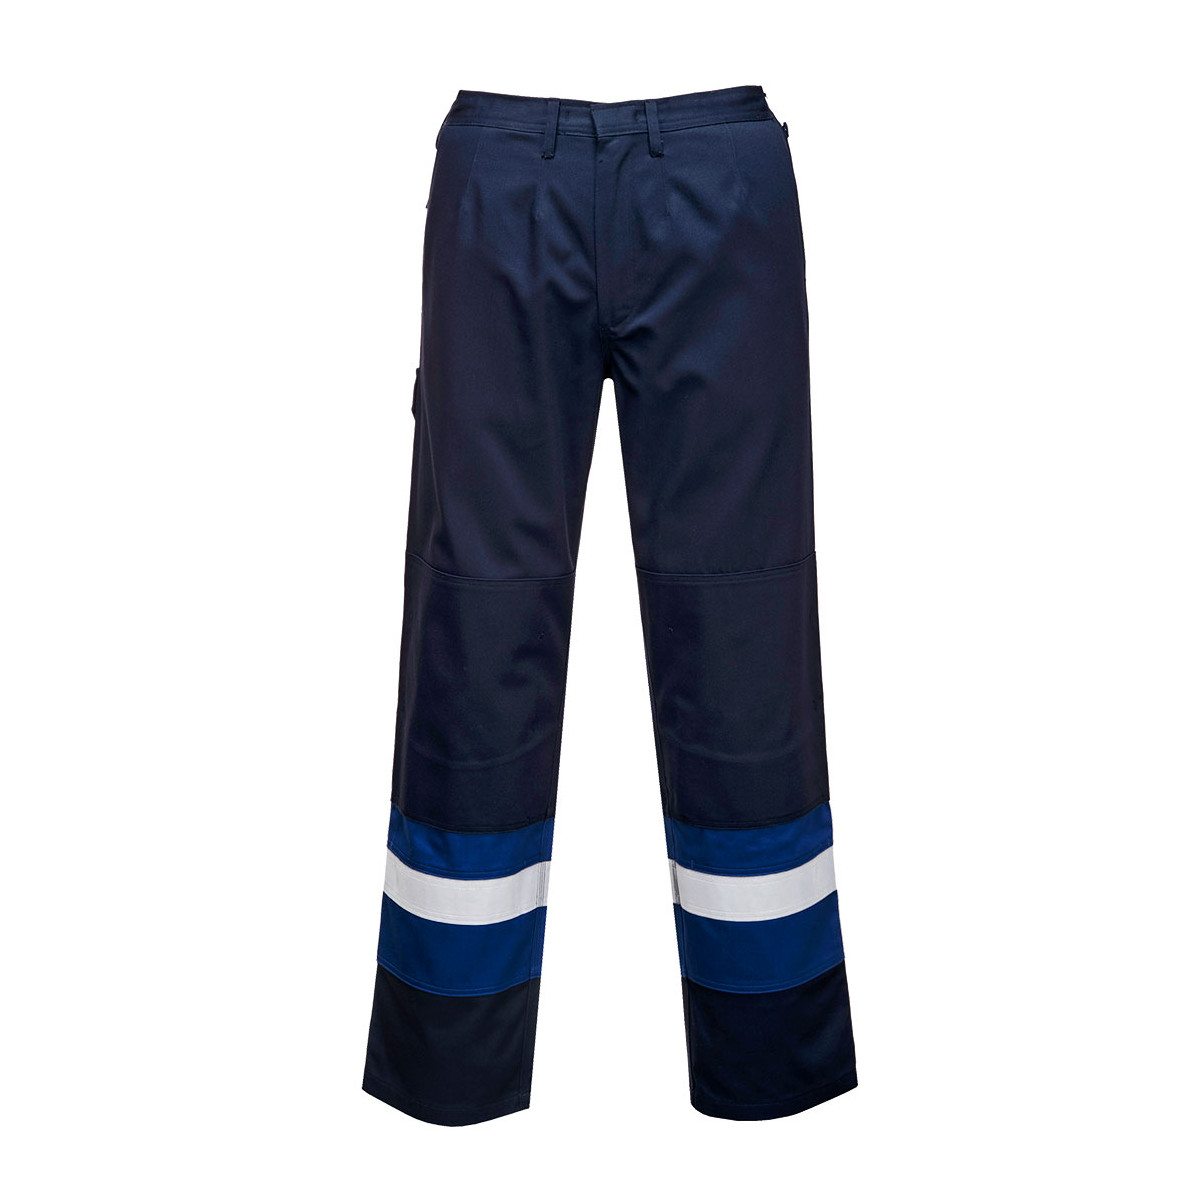 trudnopalna-odziez - Spodnie do pasa bizflame plus trudnopalne ostrzegawcze odblaskowe granatowo niebieskie FR56 Portwest